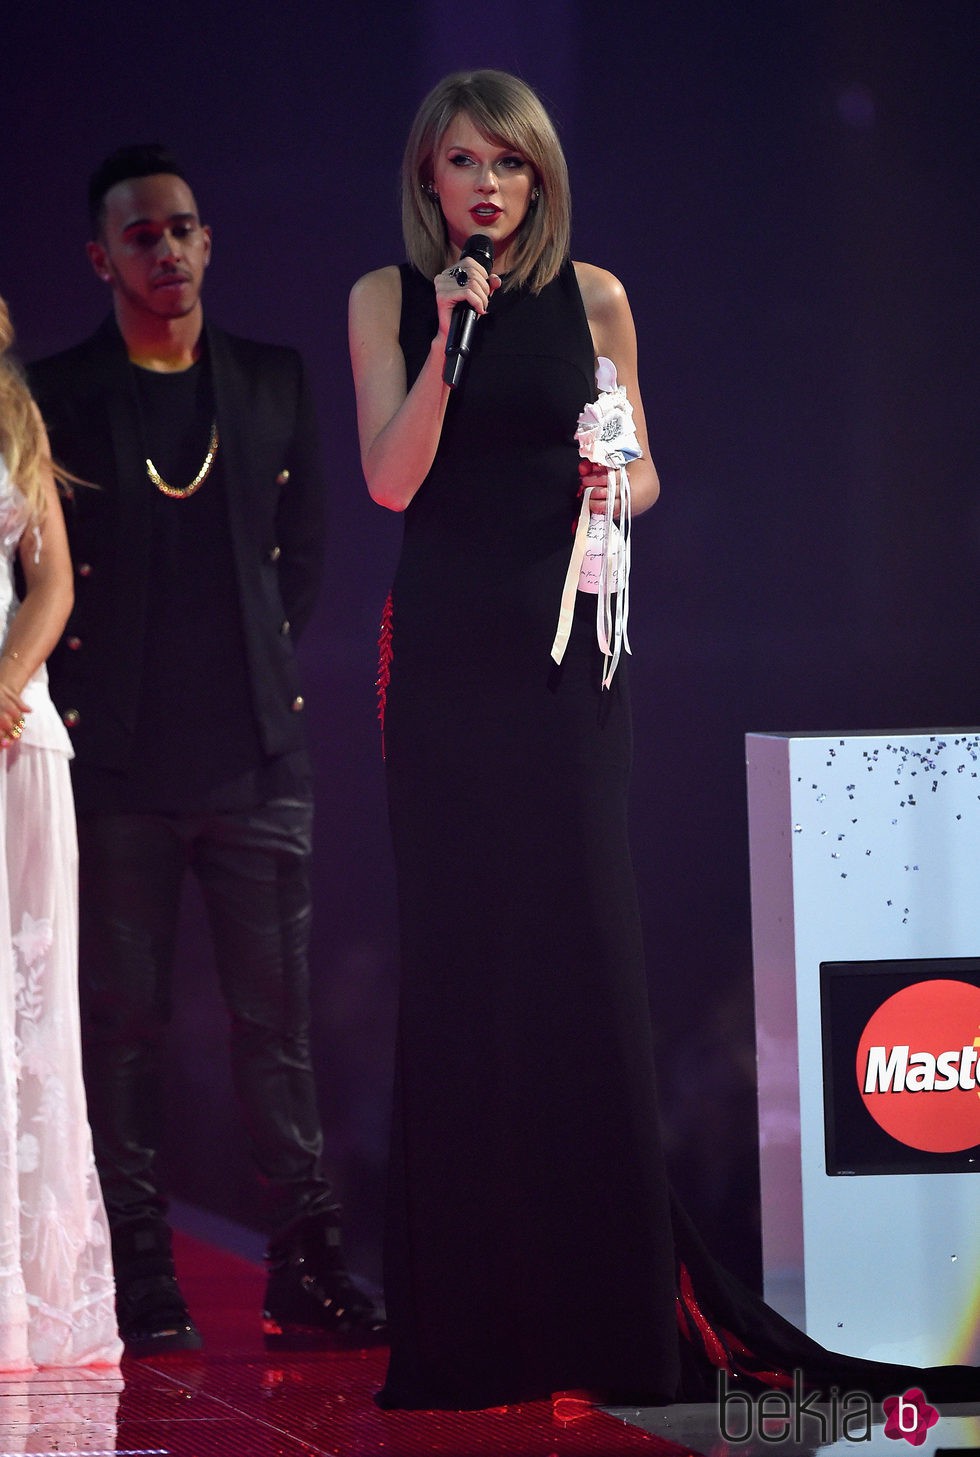 Taylor Swift recogiendo su premio de los Brit Awards 2015